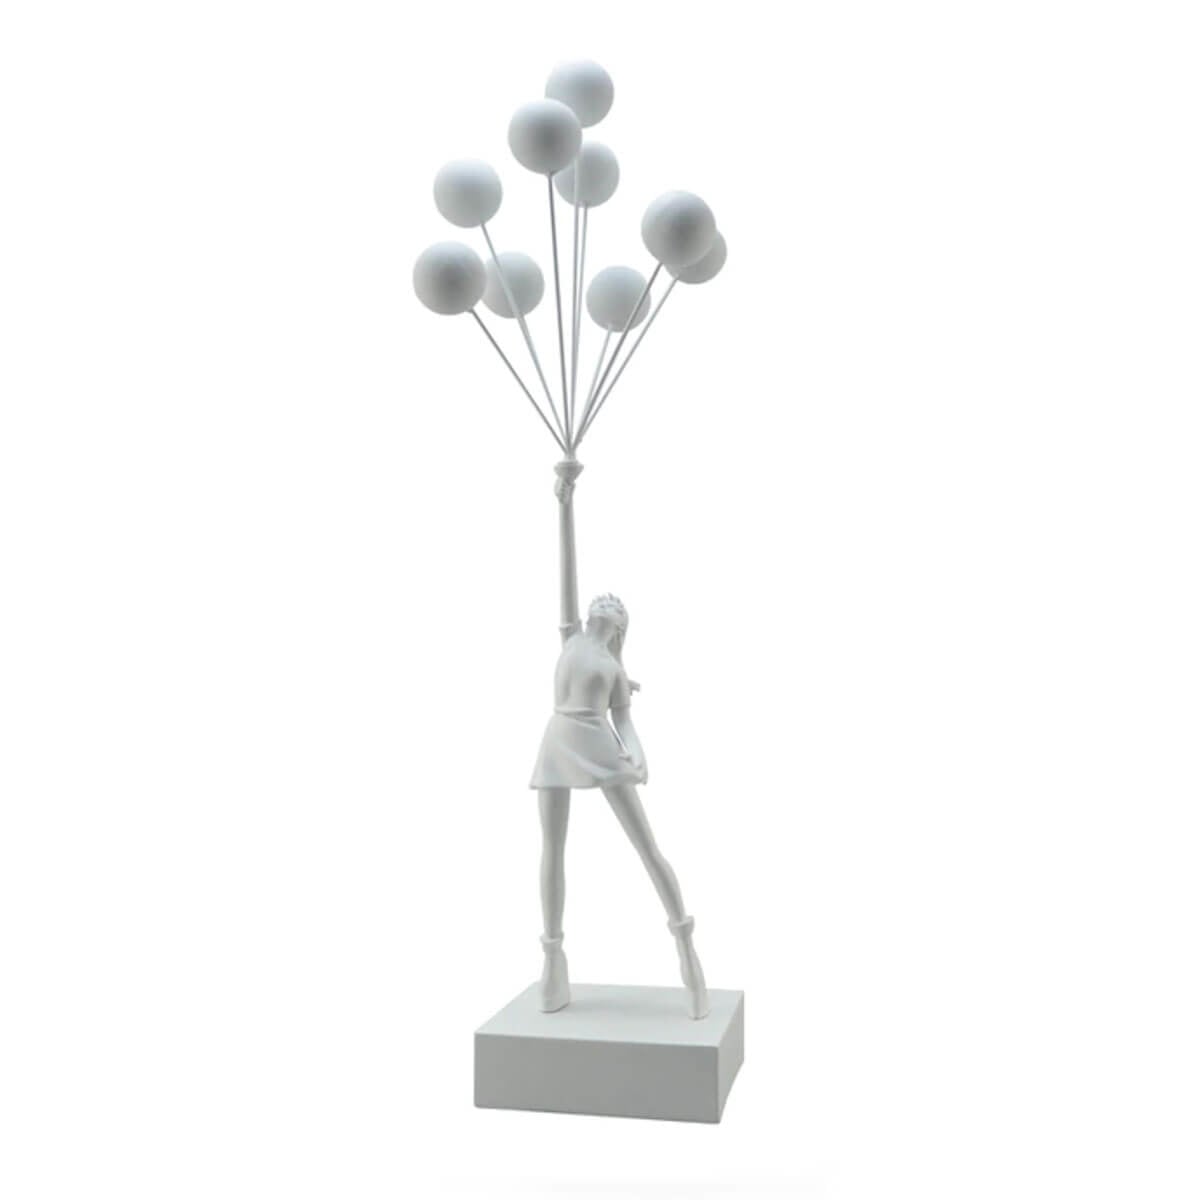 Flying Balloon Girl Banksy Sculpture - White